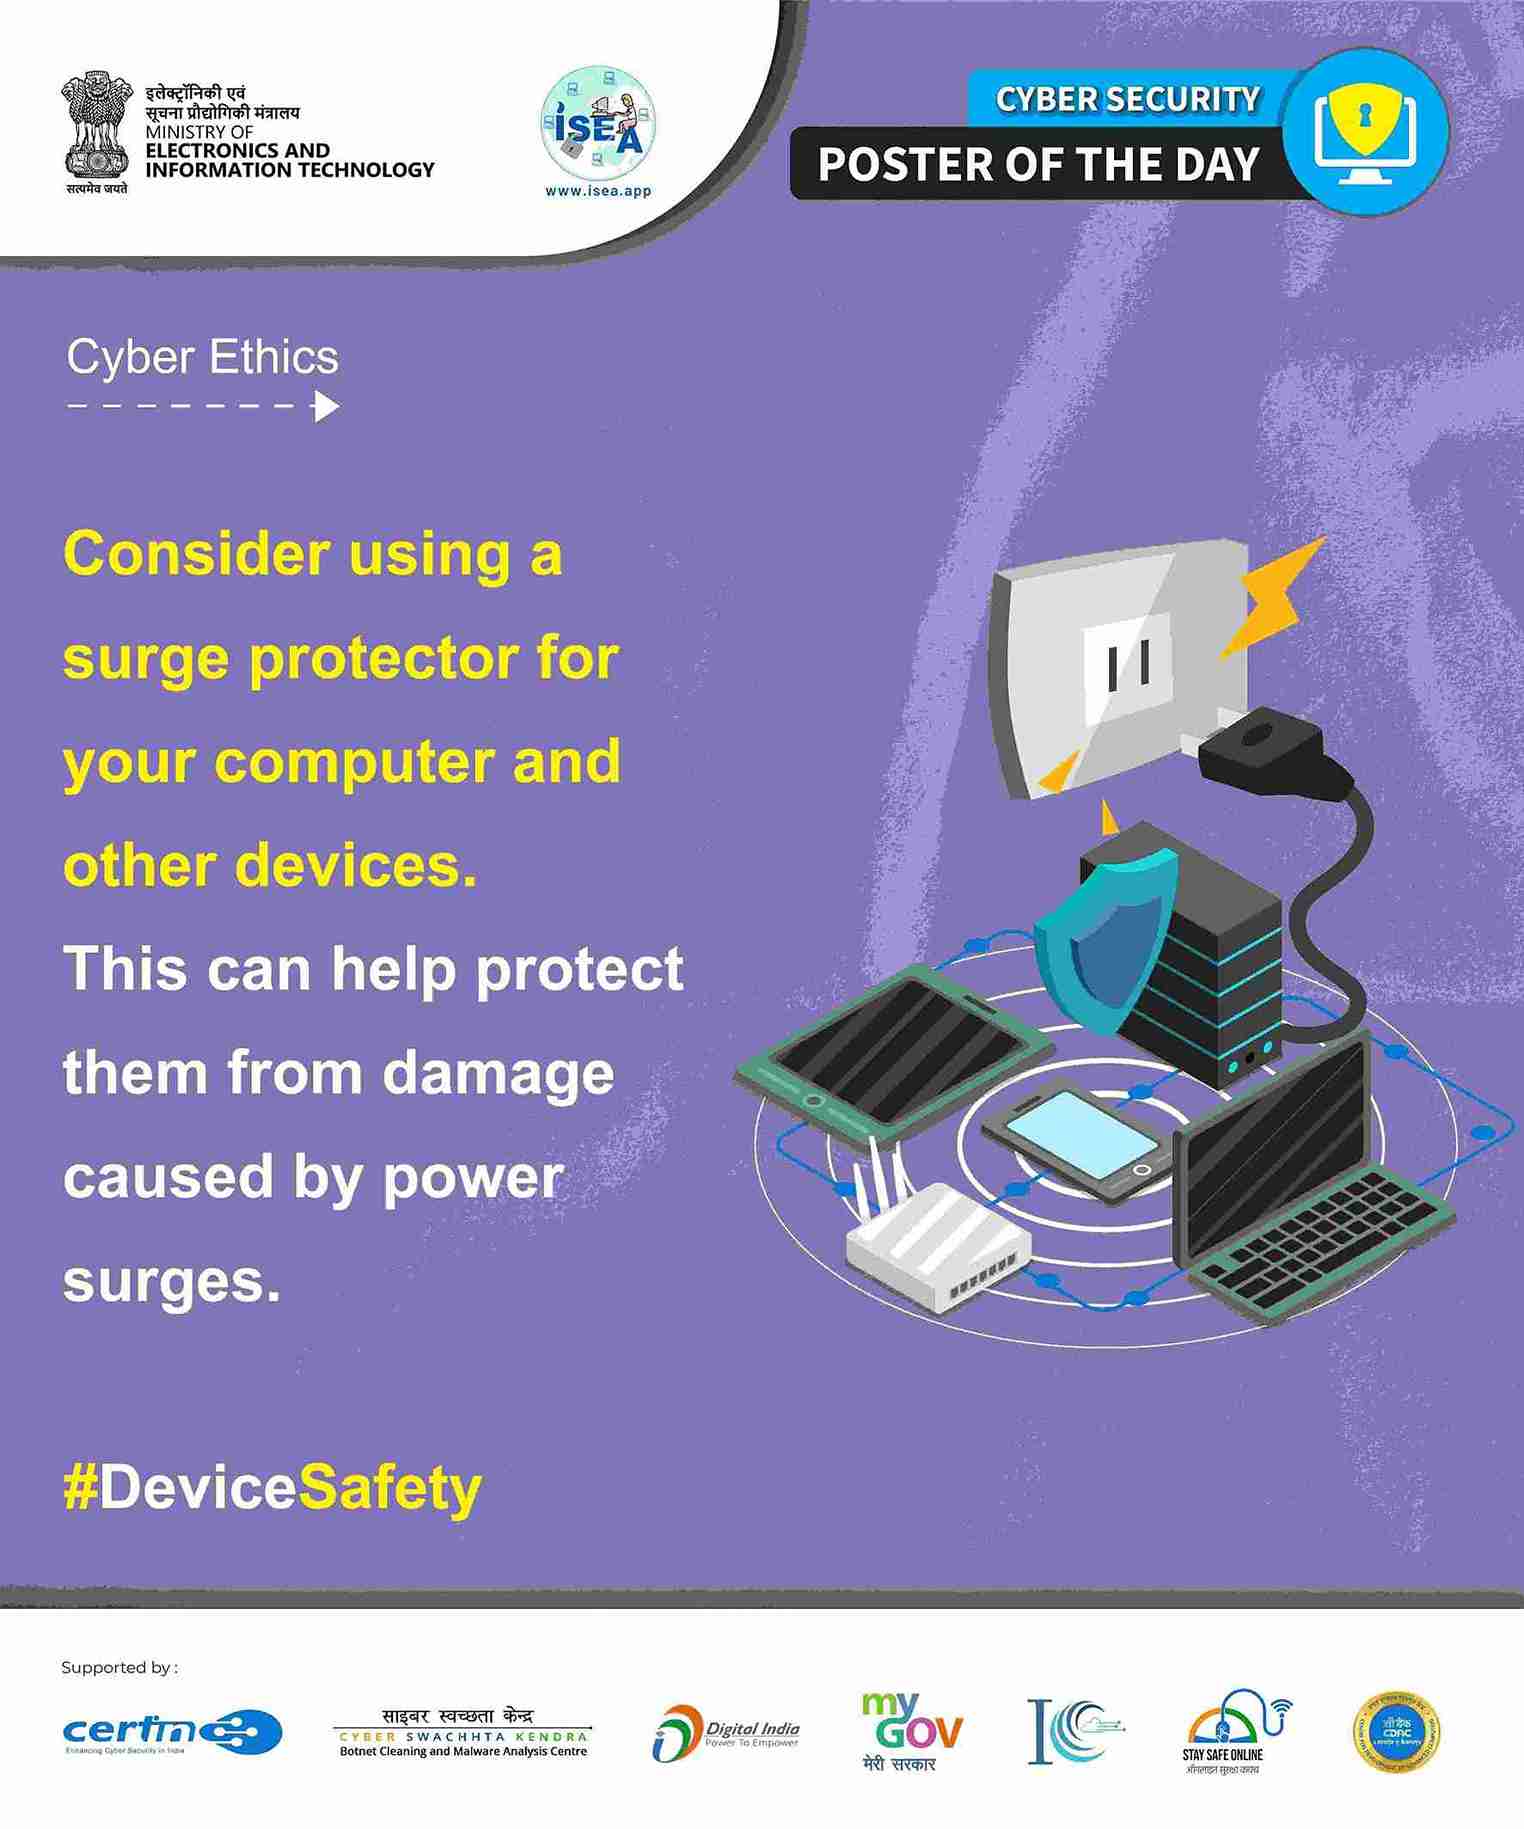 Device Safety